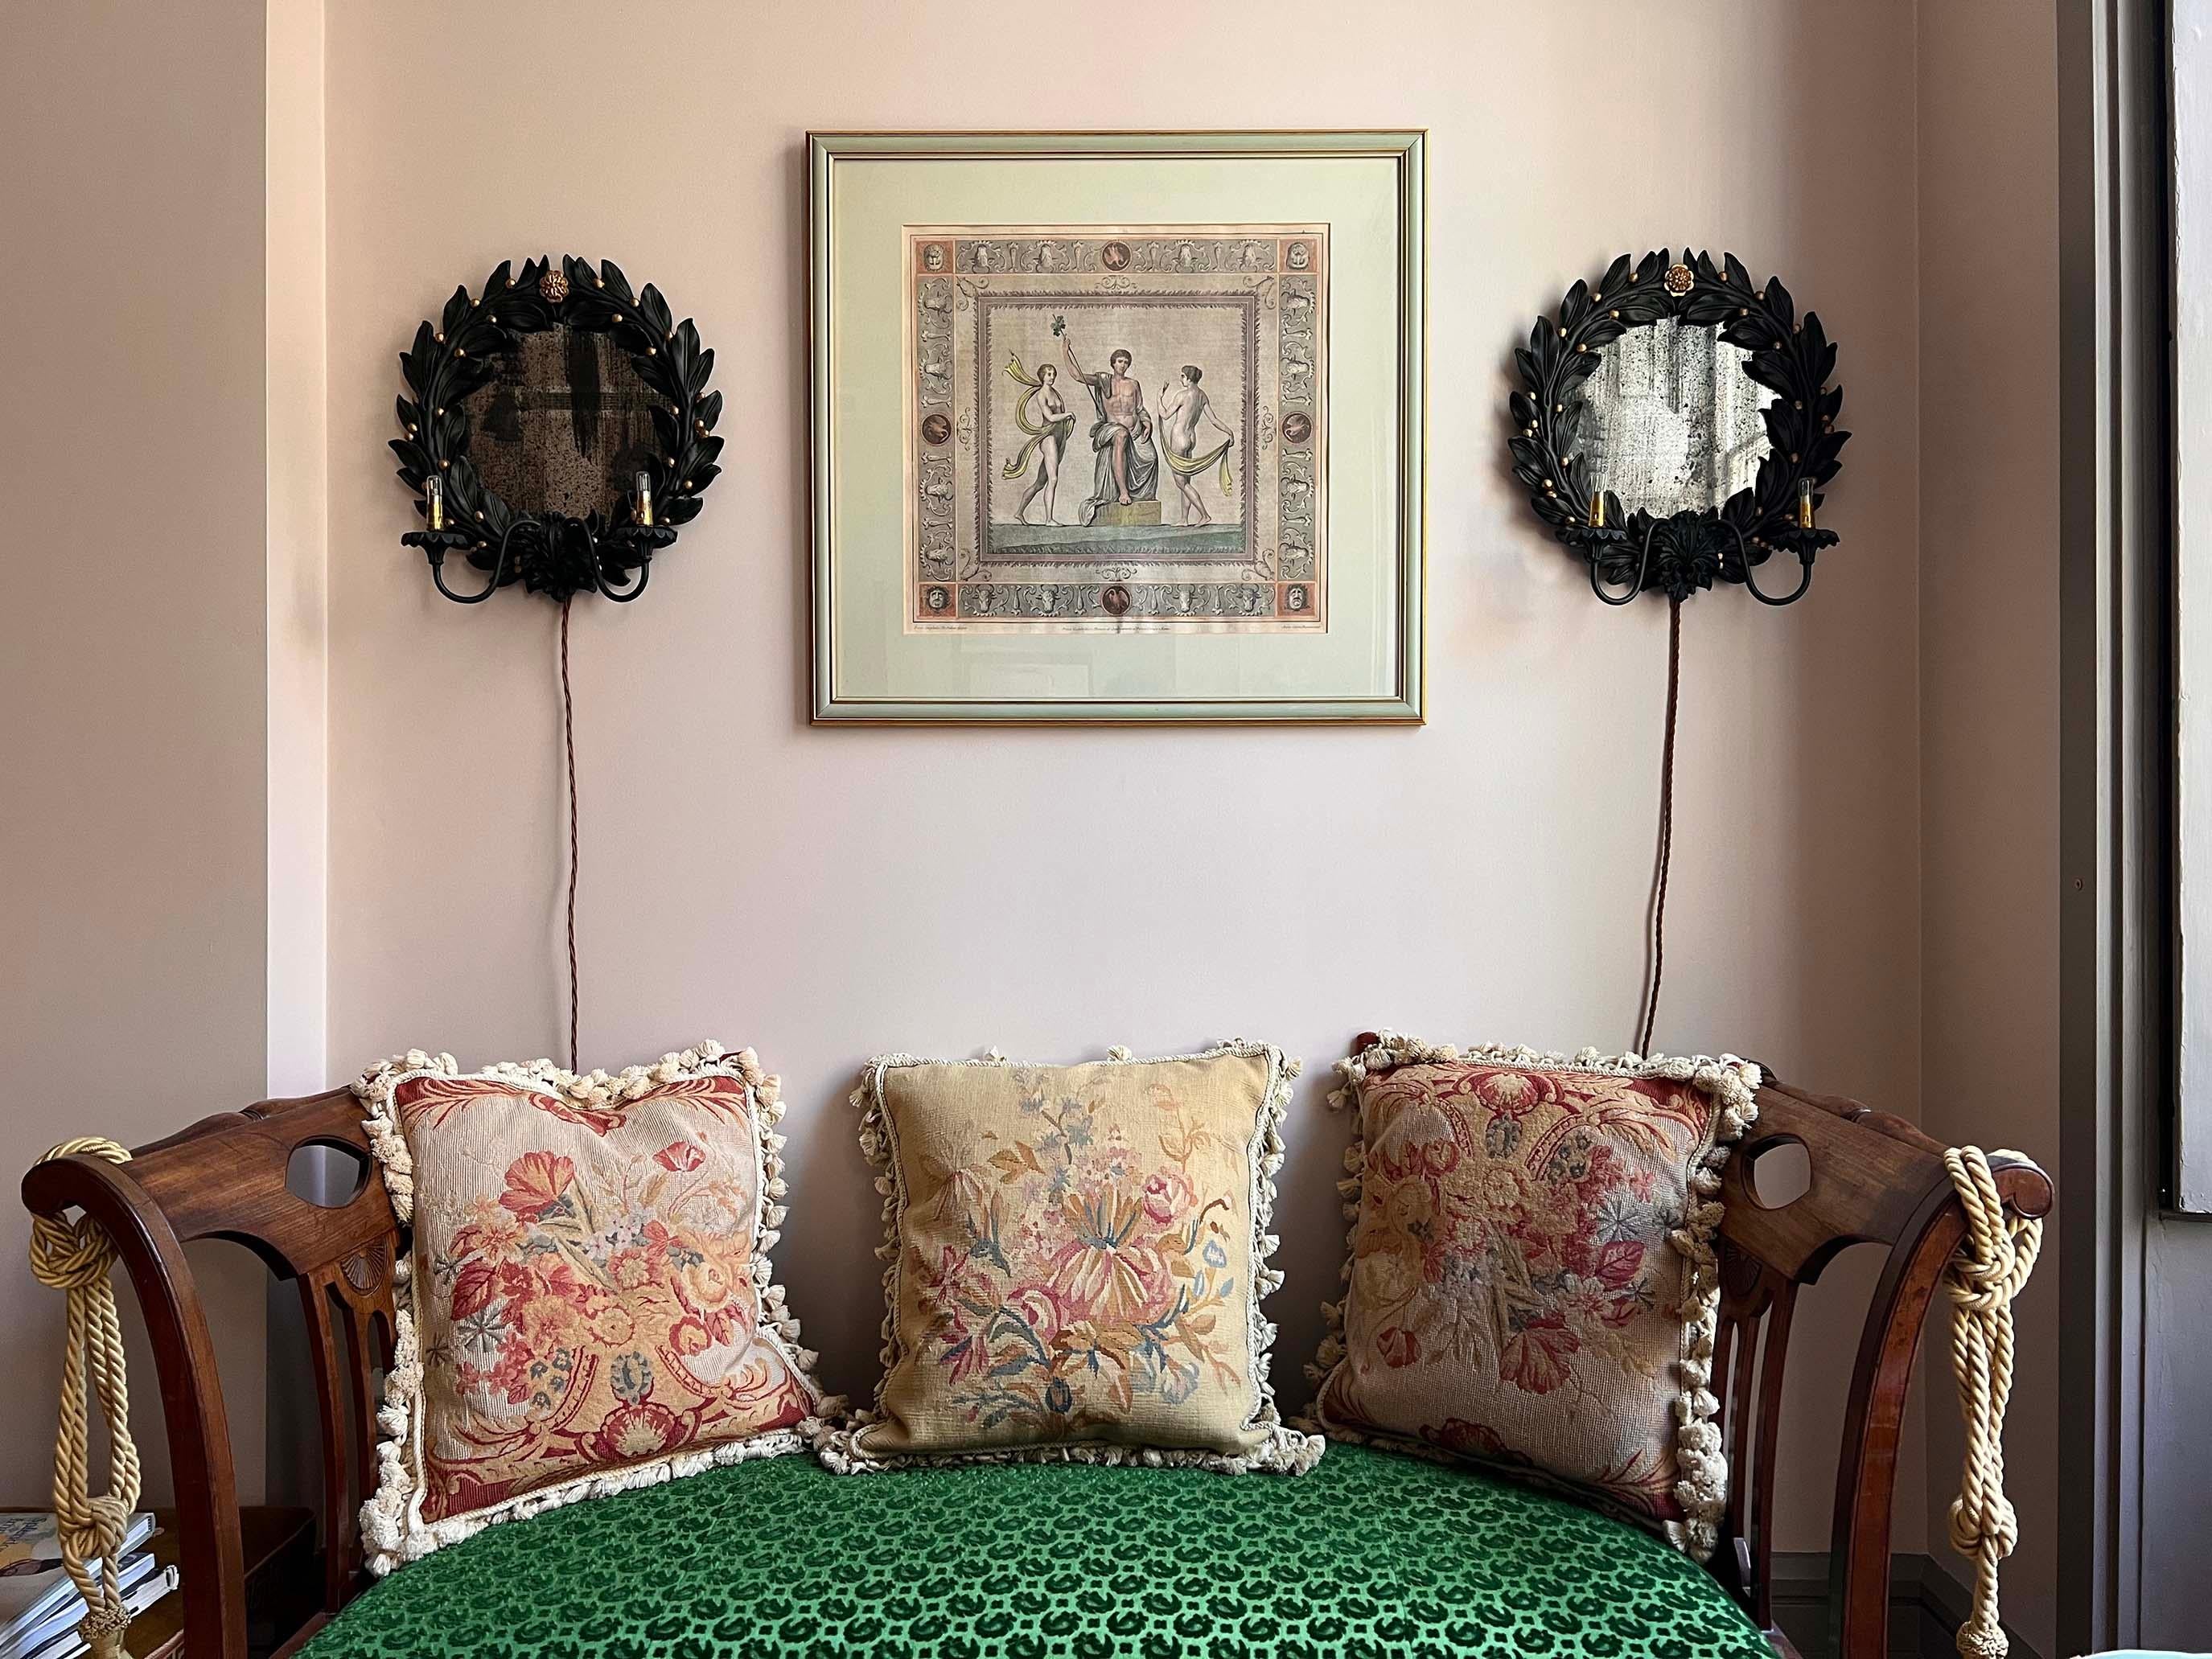 Coussin décoratif en tapisserie au motif floral, avec un support en coton moderne et une frange à pompons.
Anglais ou français, fin 19e - début 20e siècle.

Dimensions
18,5 in x 20 in / 47 cm x 51 cm.